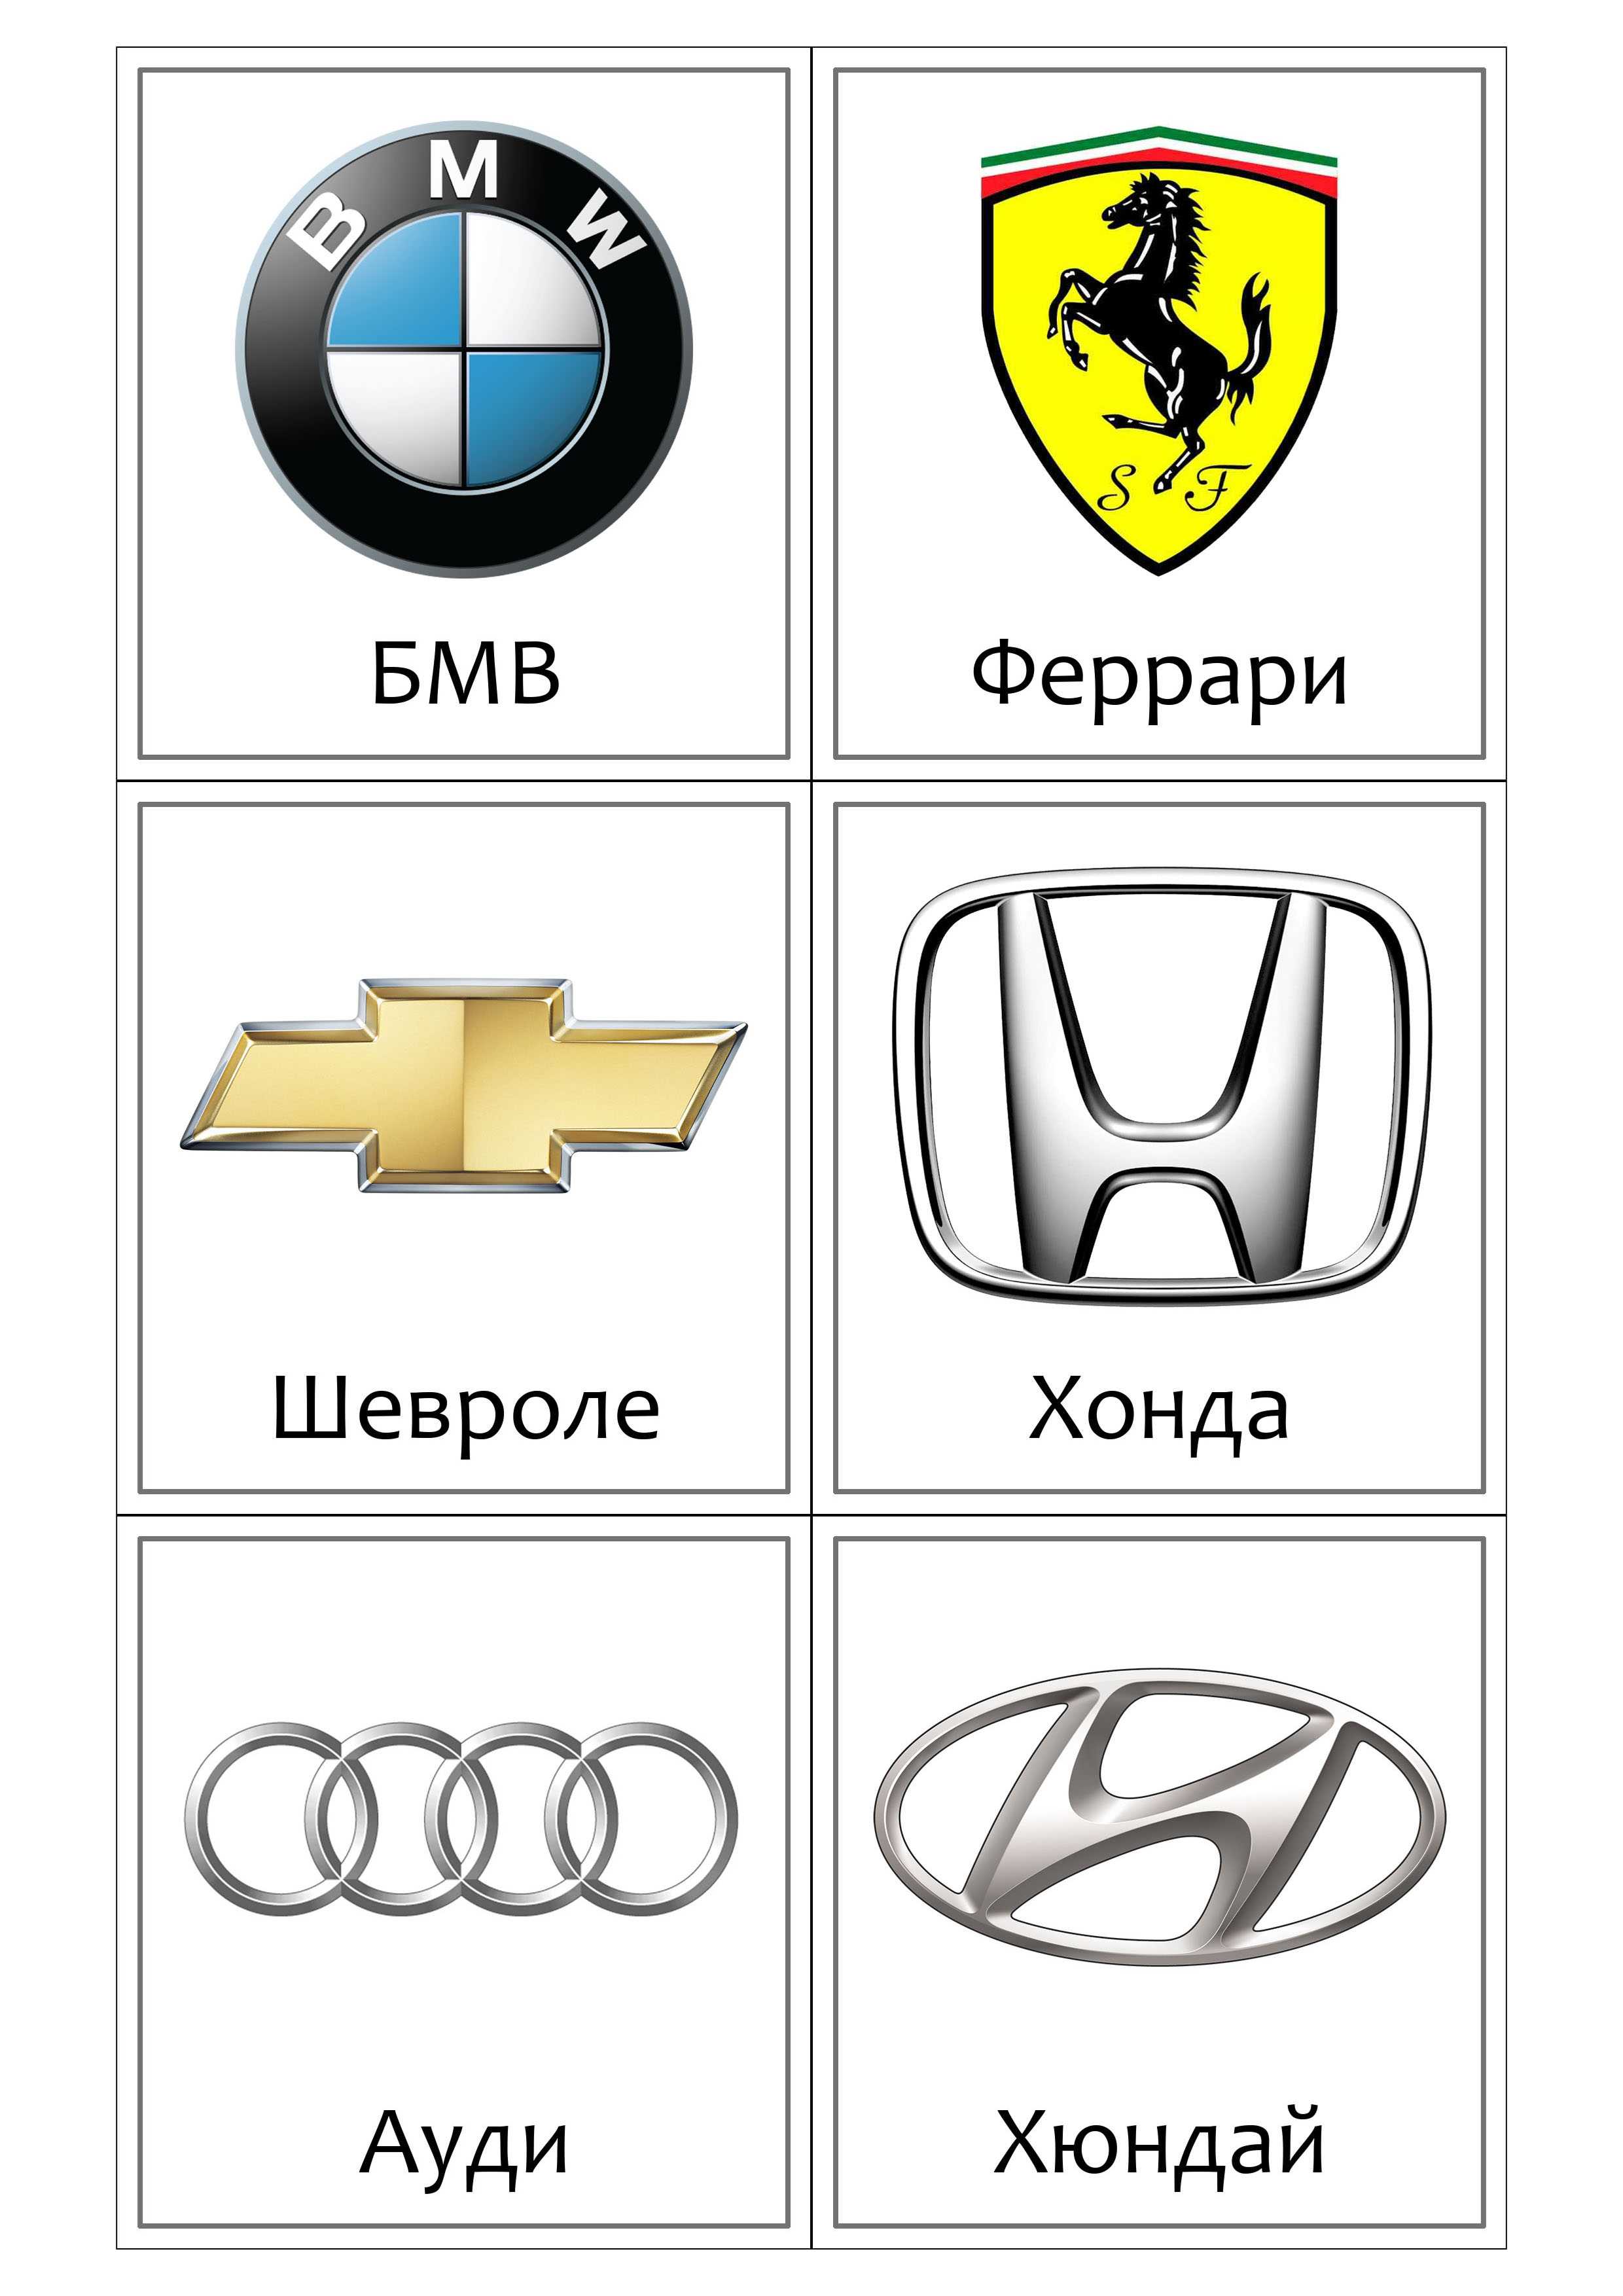 Знаки автомобильных фирм: фото, описание. логотипы автомобильных компаний америки, англии, германии, франции, швеции, италии, чехии, китая, японии, россии